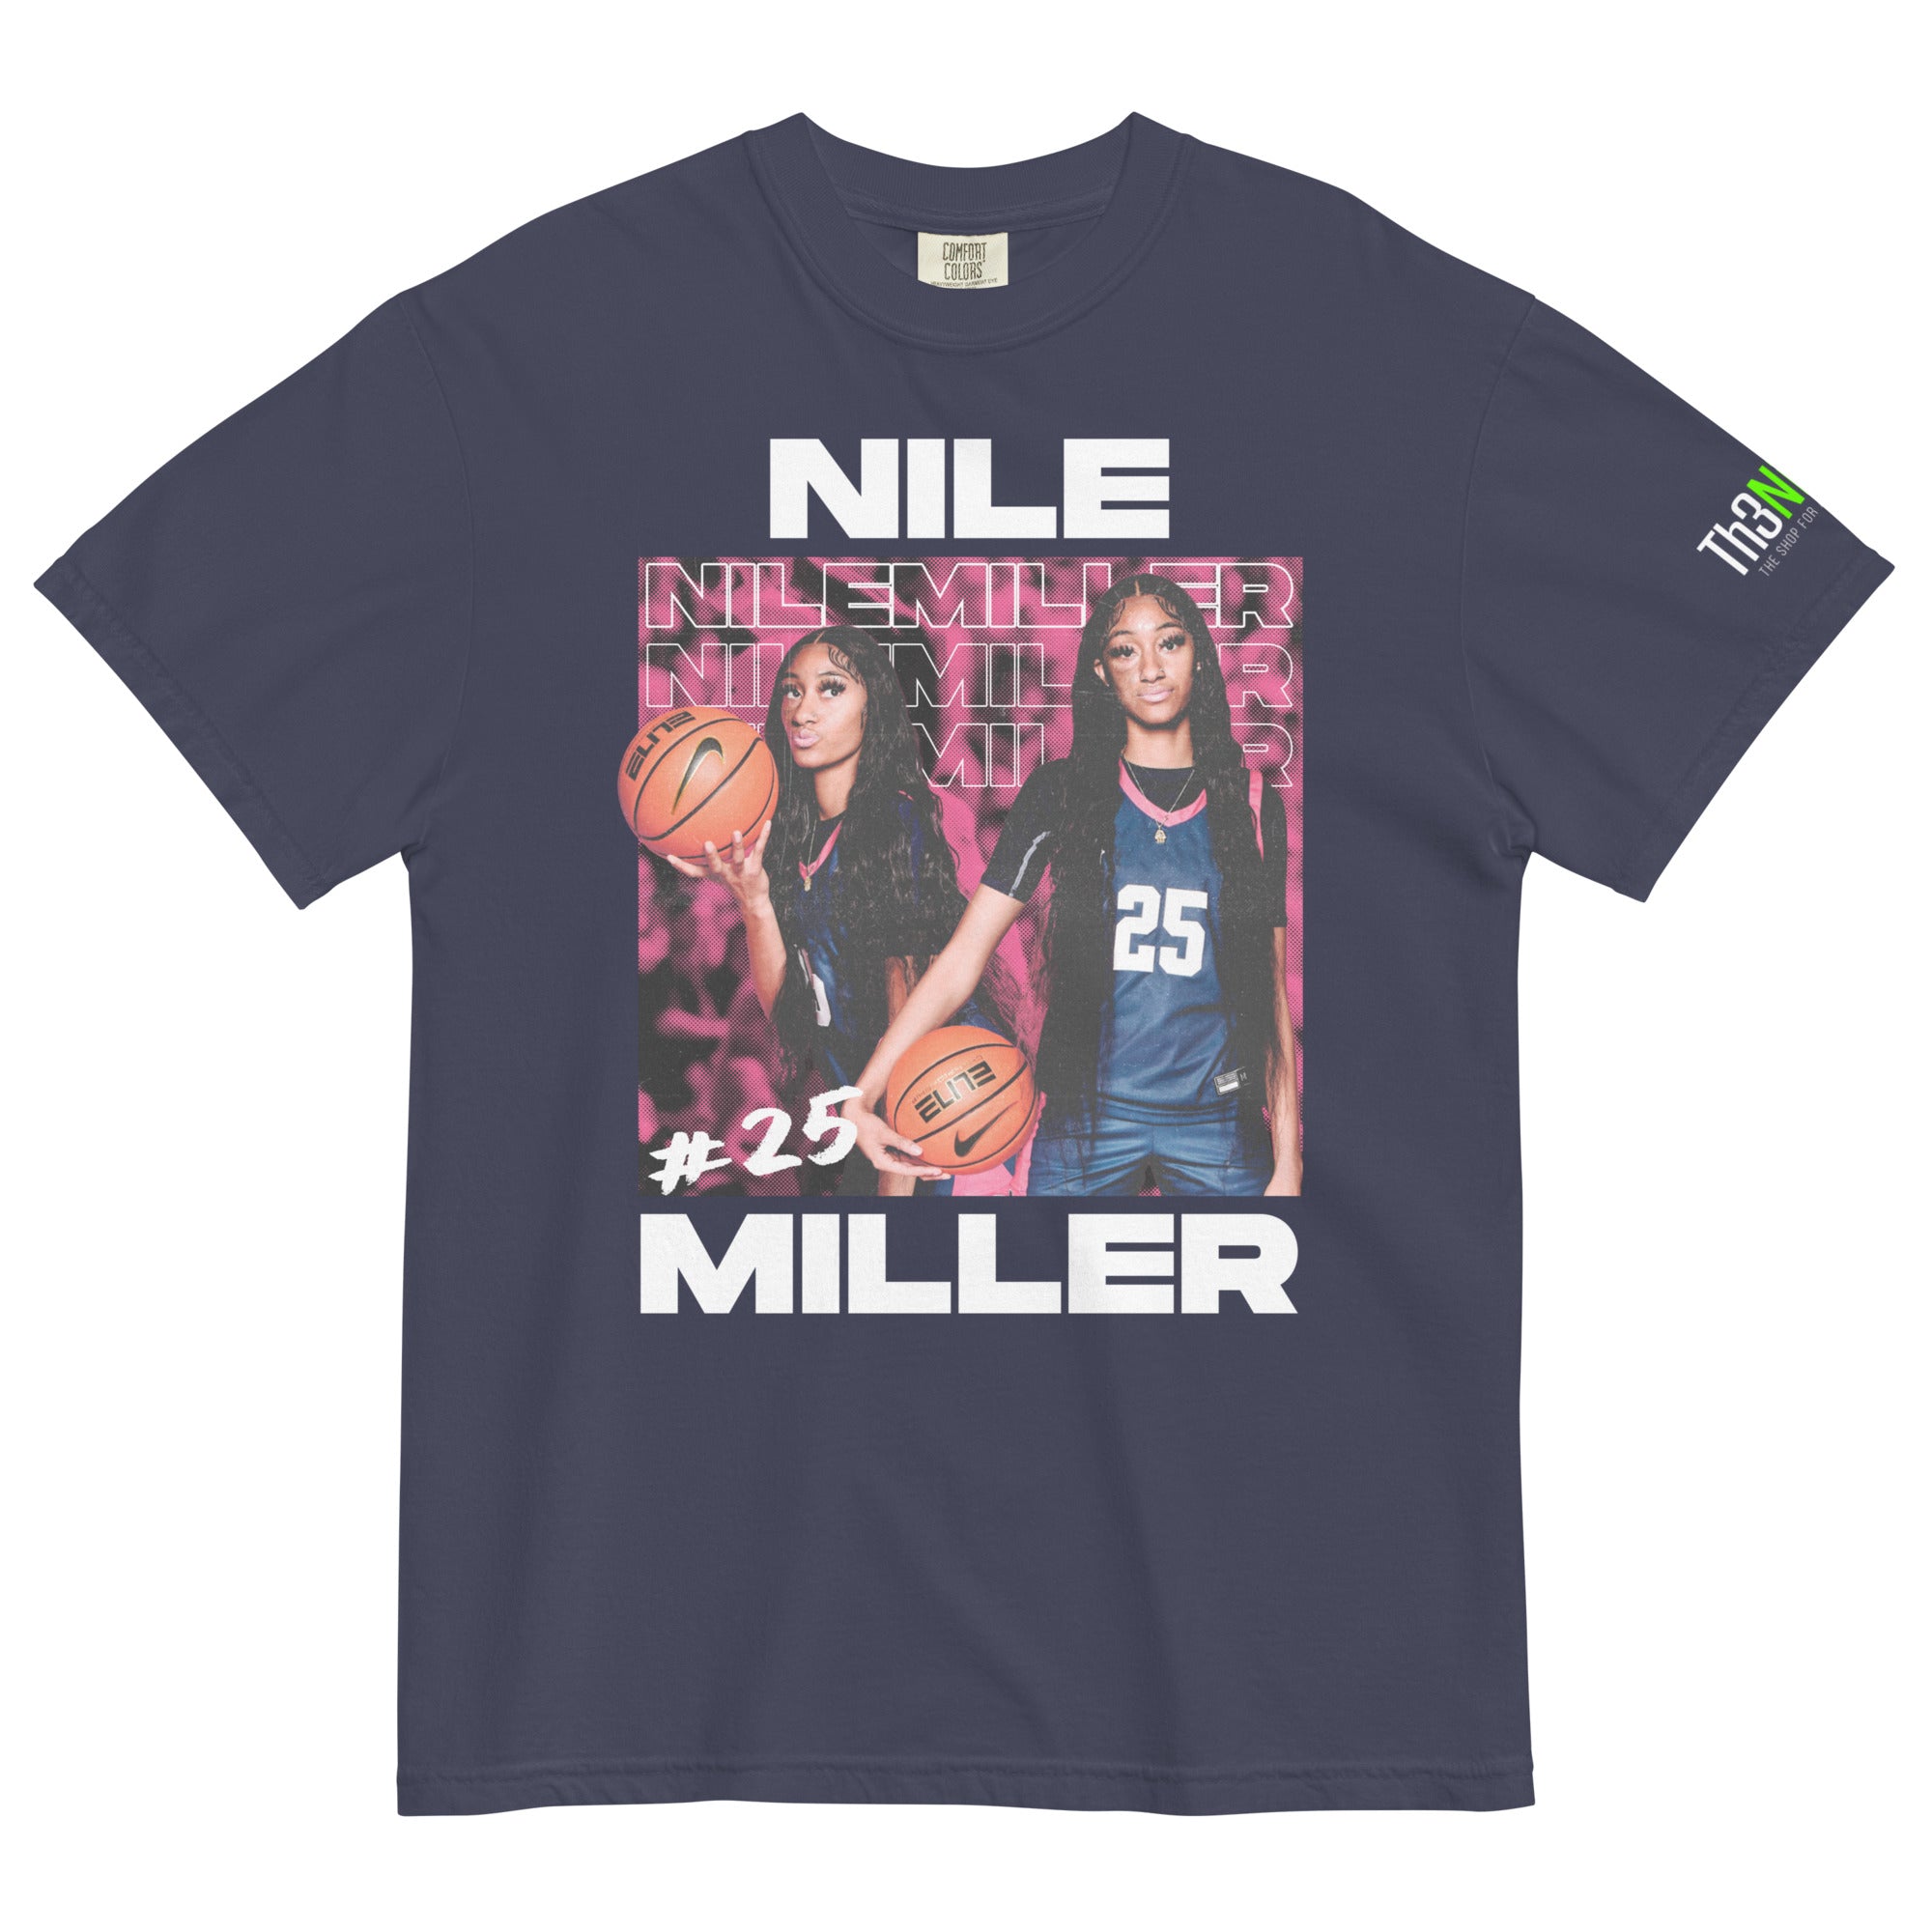 Nile Miller Tee